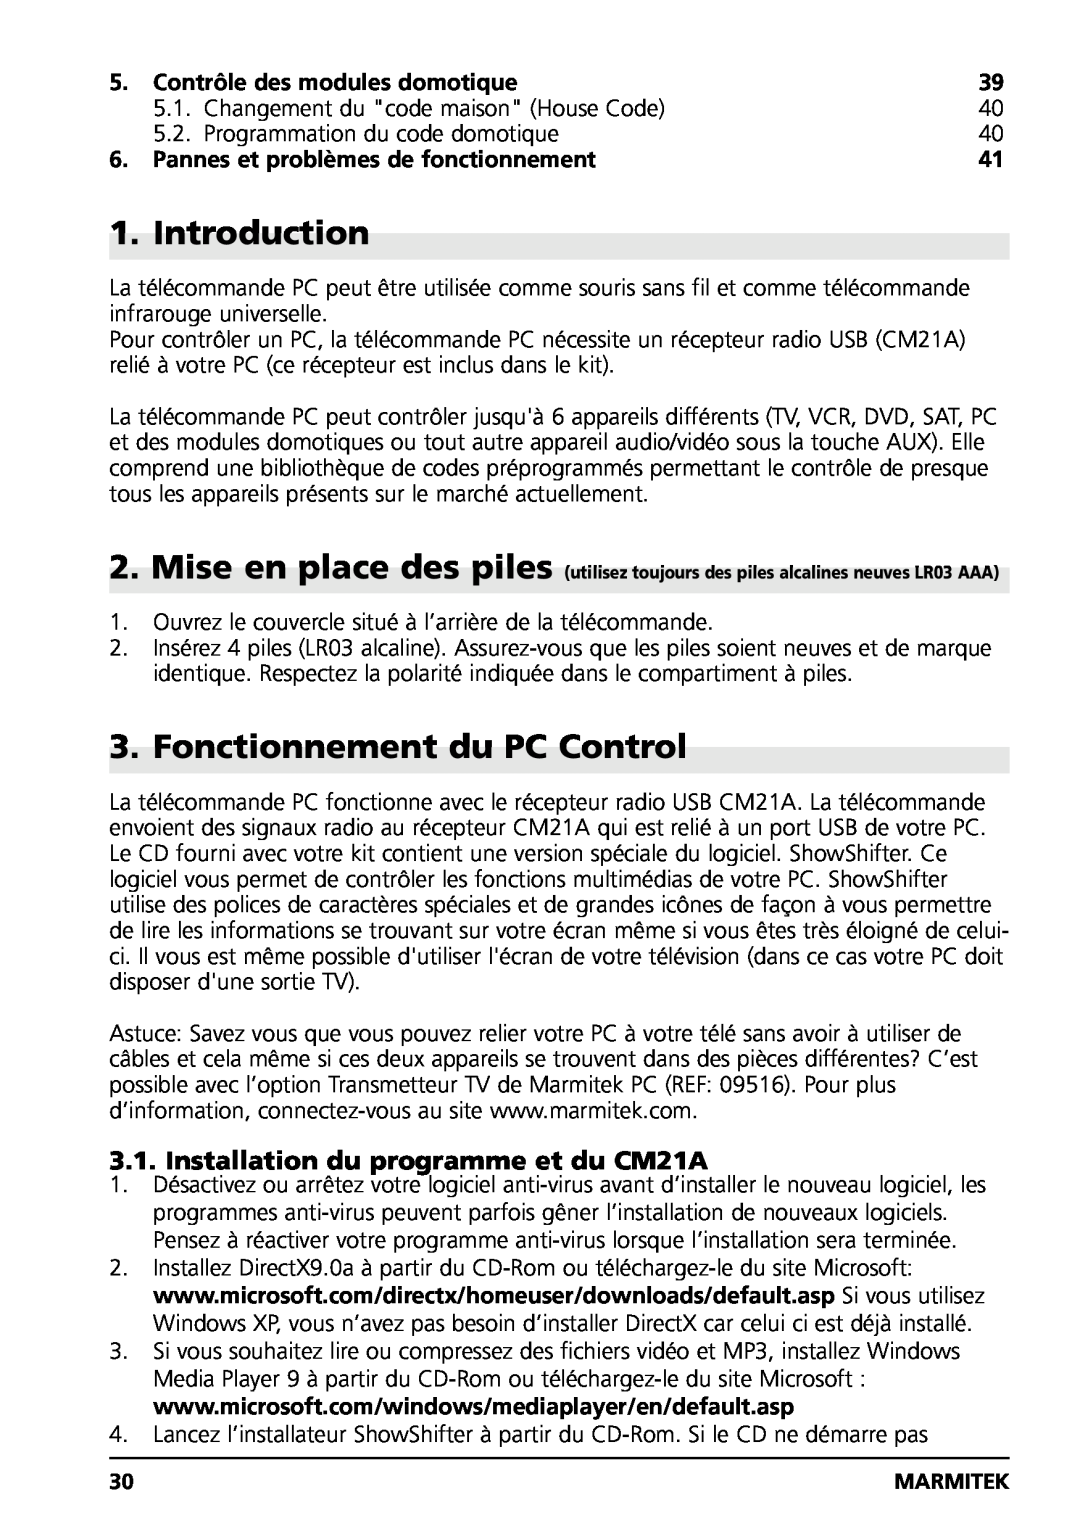 Marmitek PC CONTROL Fonctionnement du PC Control, Installation du programme et du CM21A, Contrôle des modules domotique 